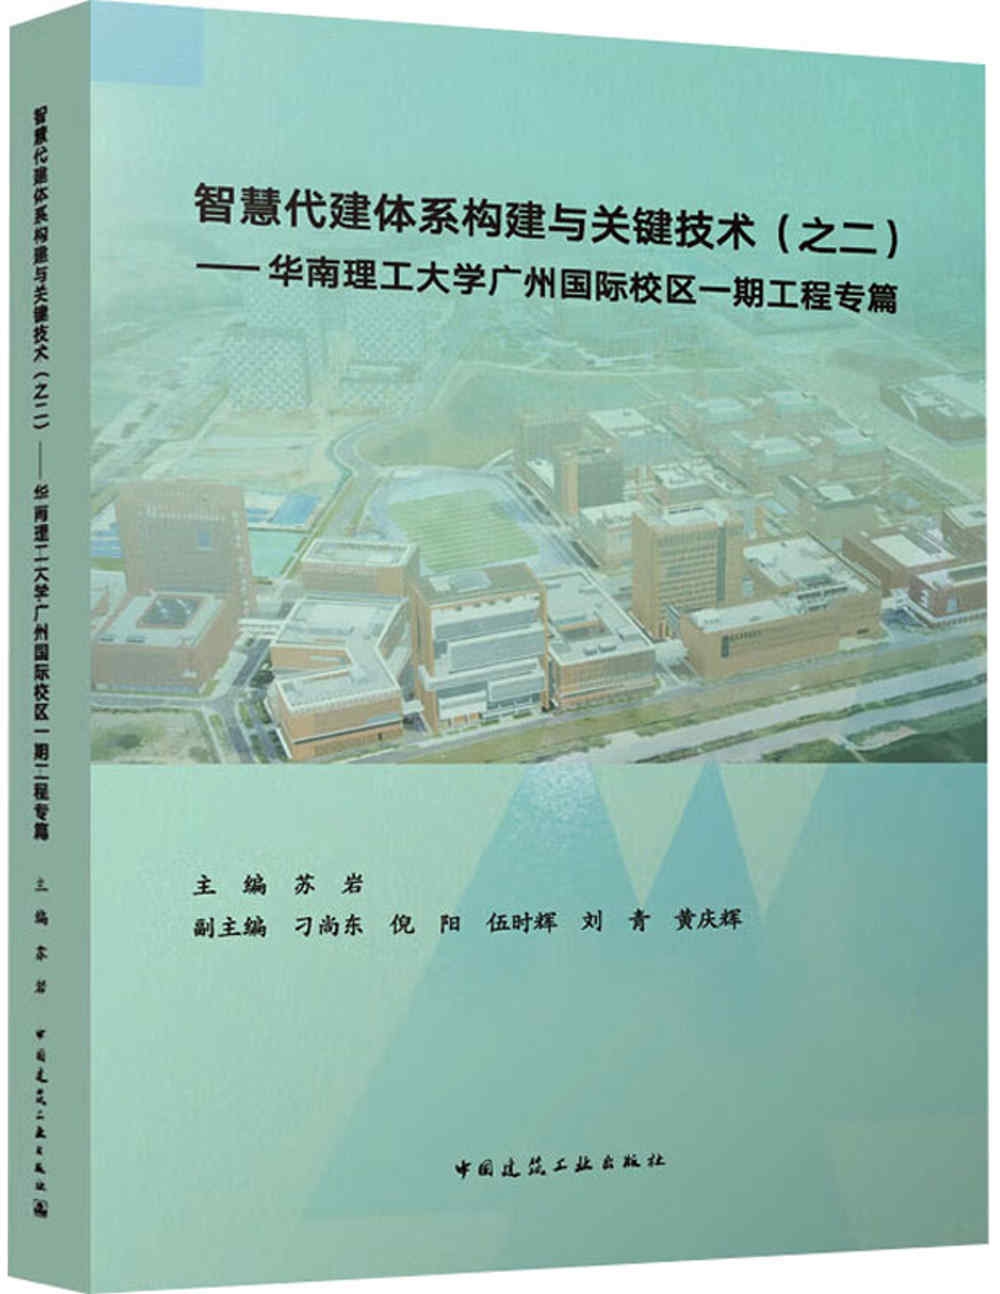 智慧代建體系構建與關鍵技術（之二）：華南理工大學廣州國際校區一期工程專篇